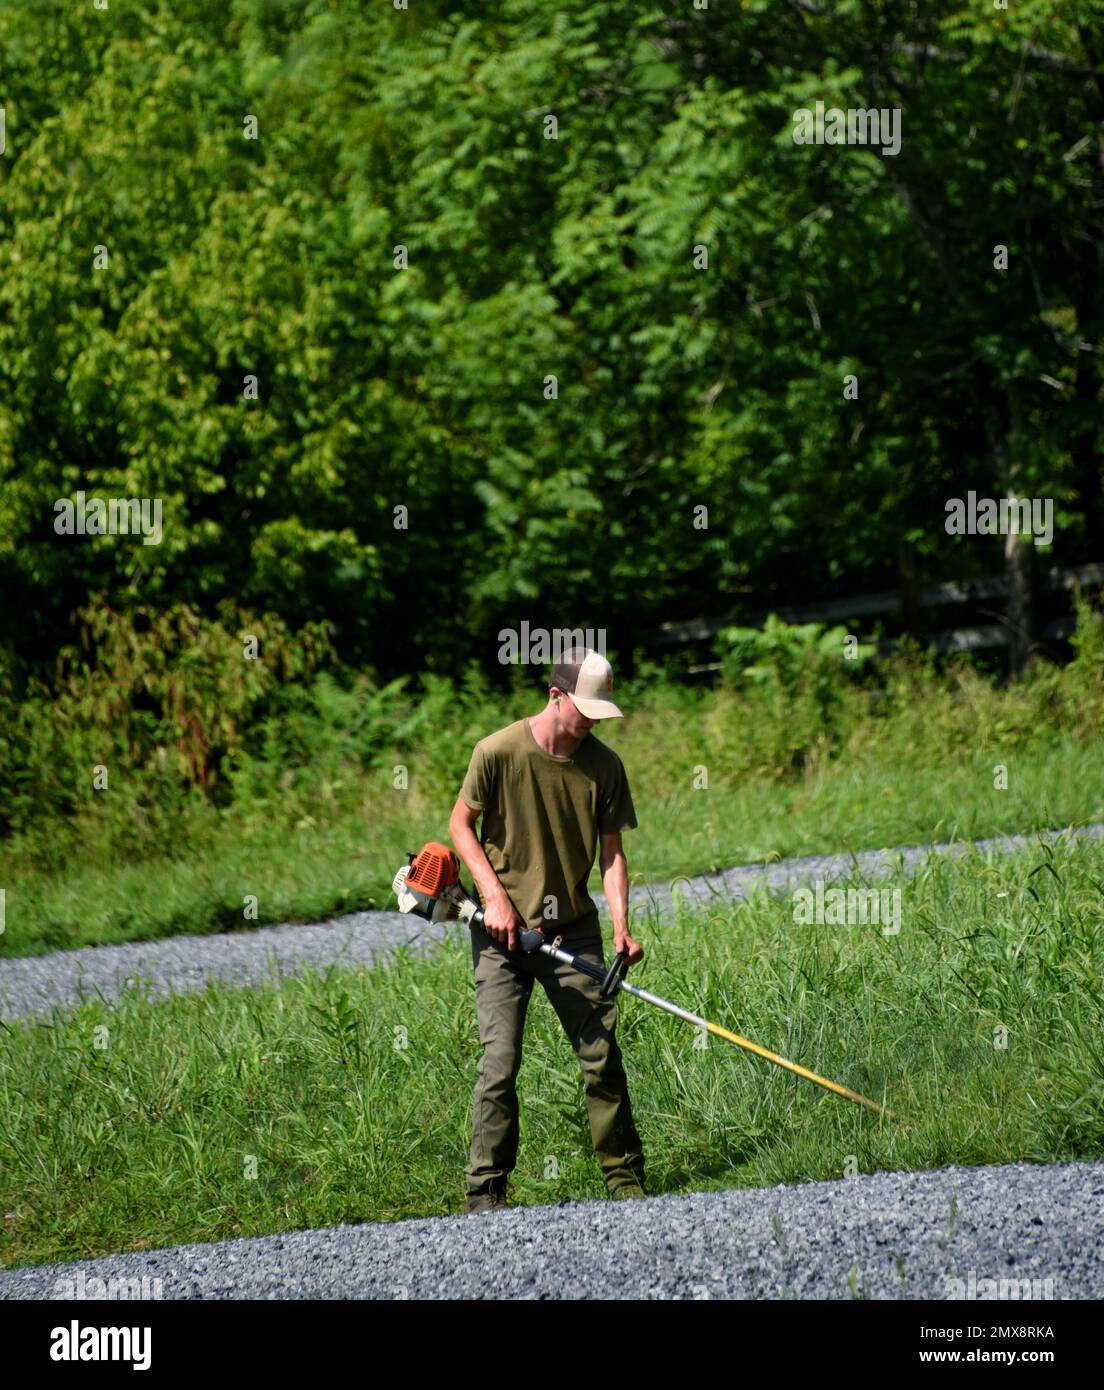 Ein junger Mann hält Unkrautfresser und schneidet das Gras über die Schottereinfahrt. Er ist verschwitzt und heiß, während er in der Sommerhitze arbeitet. Stockfoto